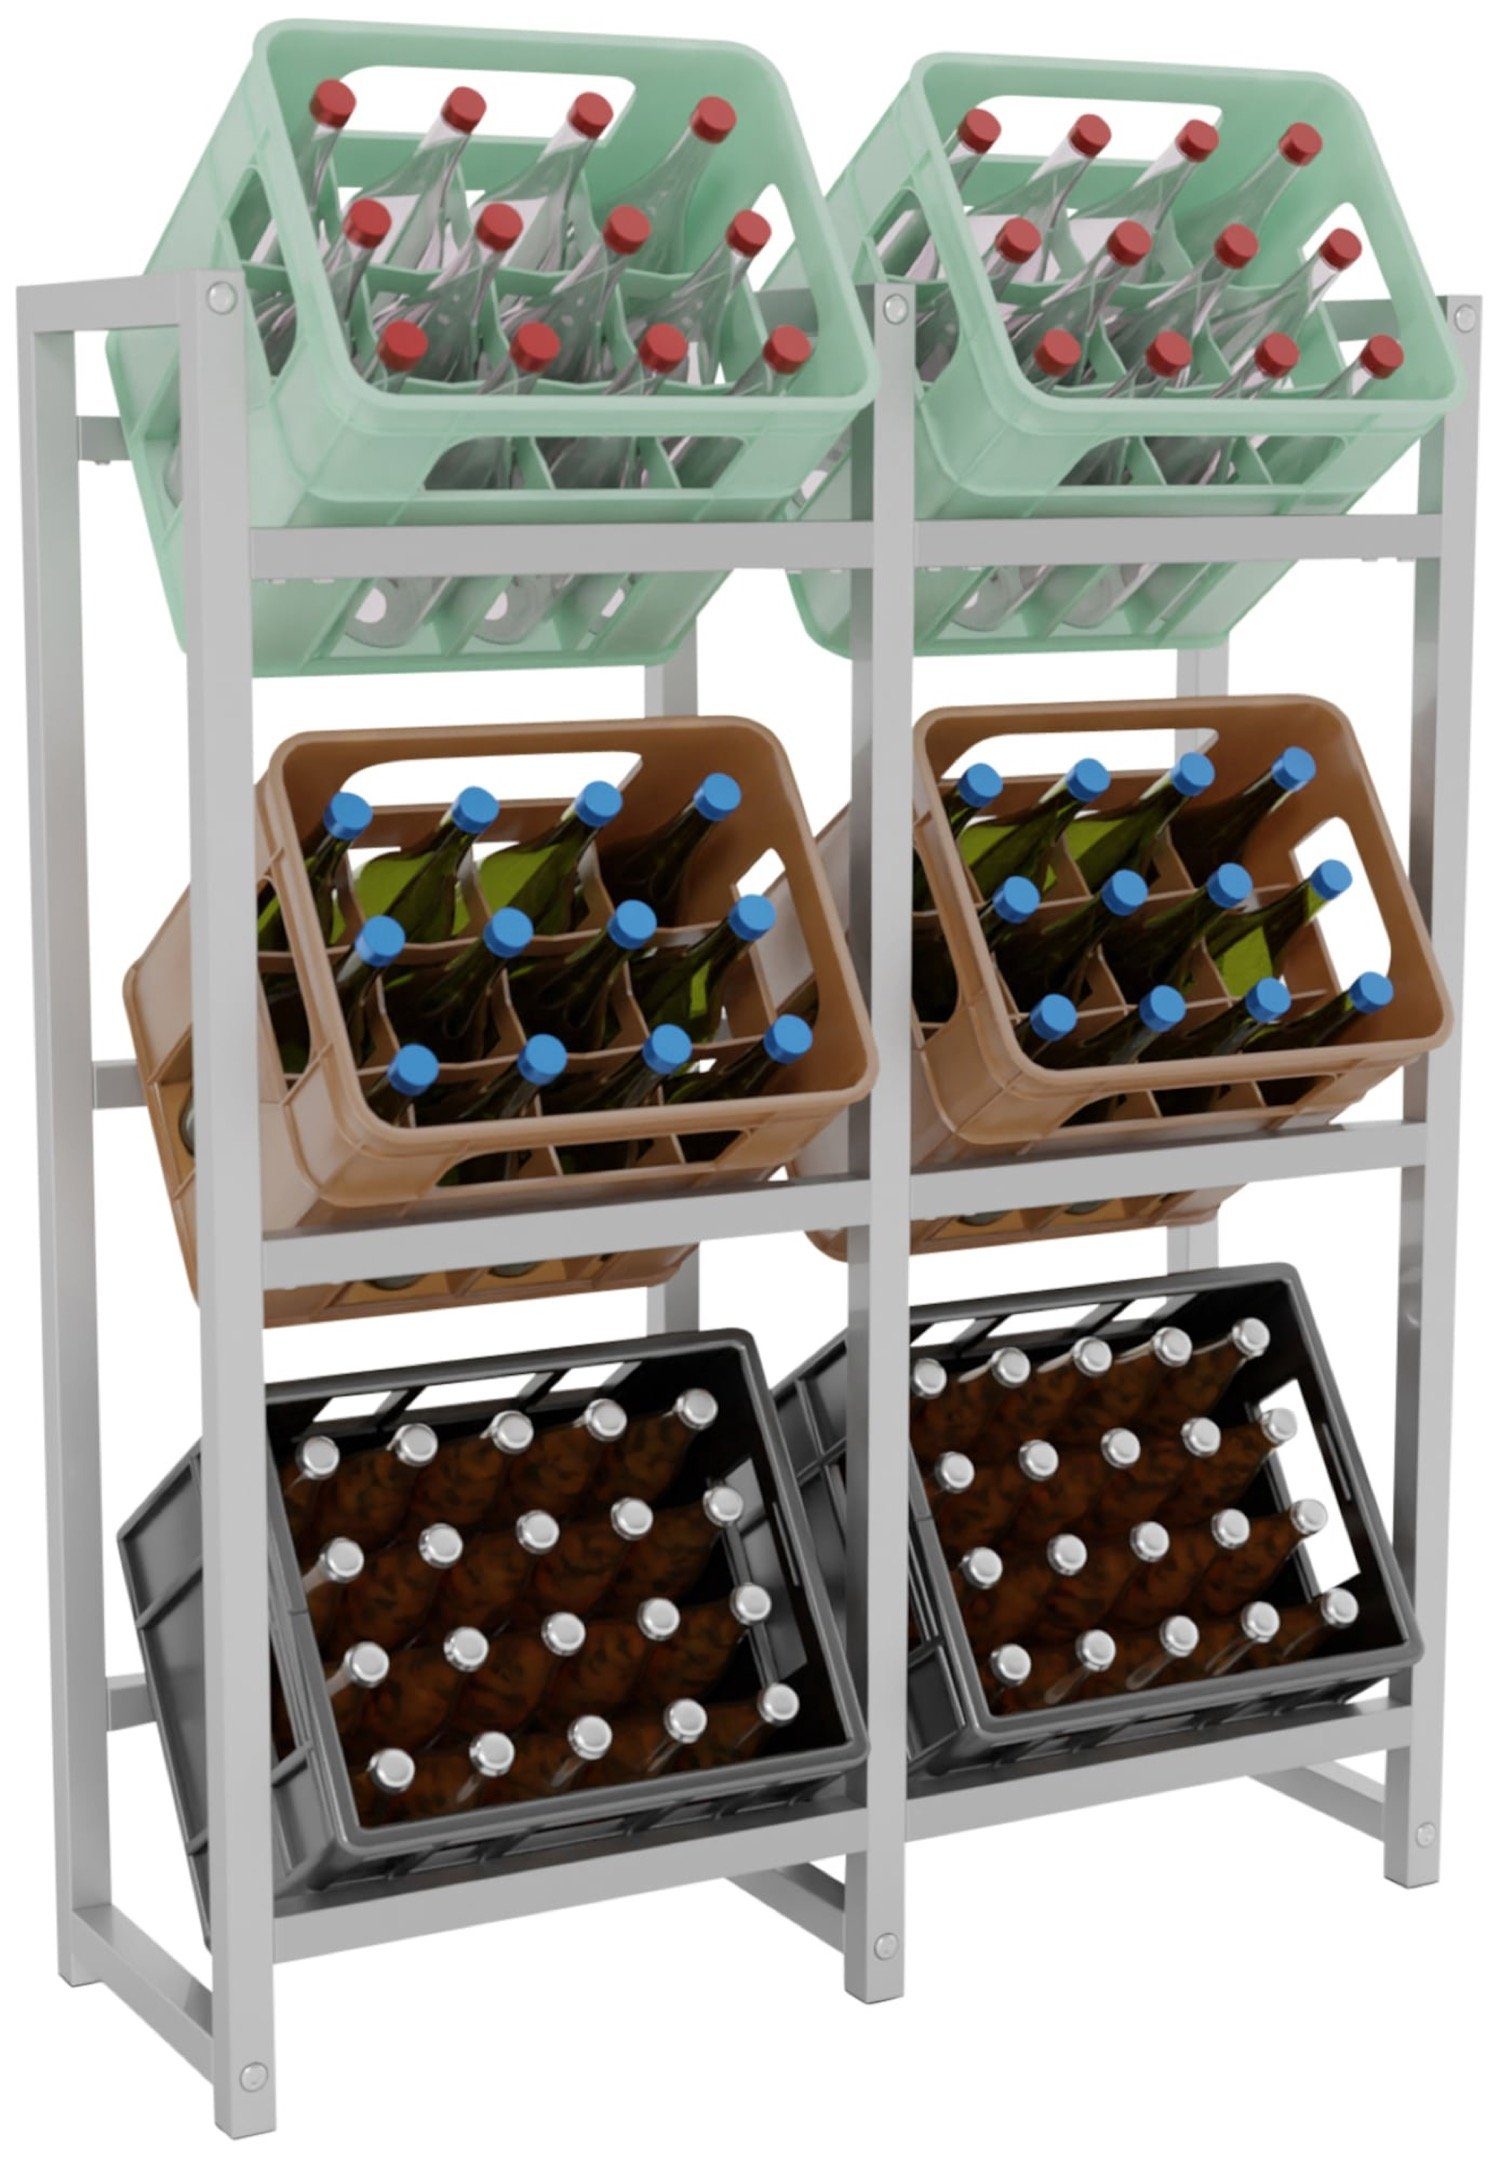 TPFLiving Standregal Getränkekistenständer Star - Getränkeregal für 6 Kisten in edelstahl, Kastenständer für Getränkekisten - Flaschenregal, Getränkekistenregal mit den Maßen (HxB xT): 116 x 91 x 31 cm